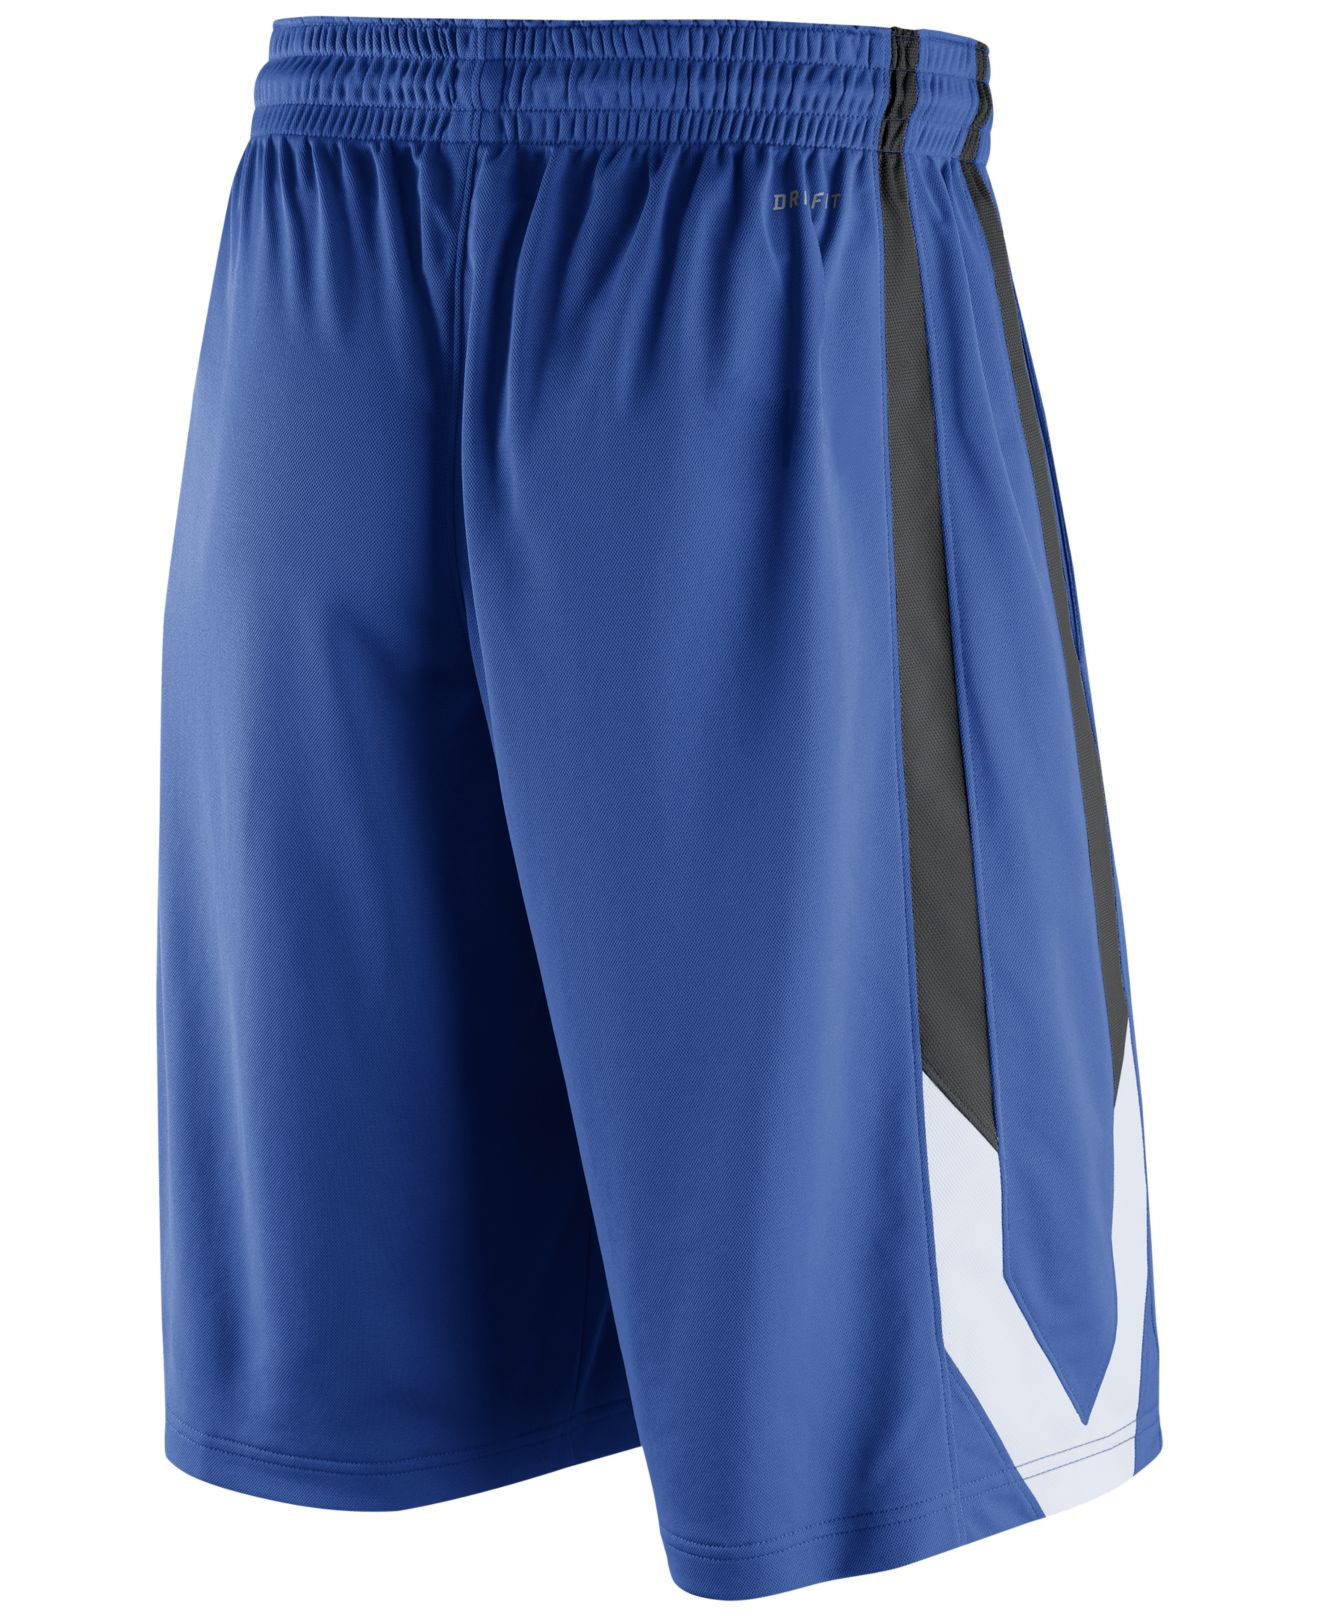 Lyst - Nike Men'S Duke Blue Devils Classic Basketball Shorts in Blue ...